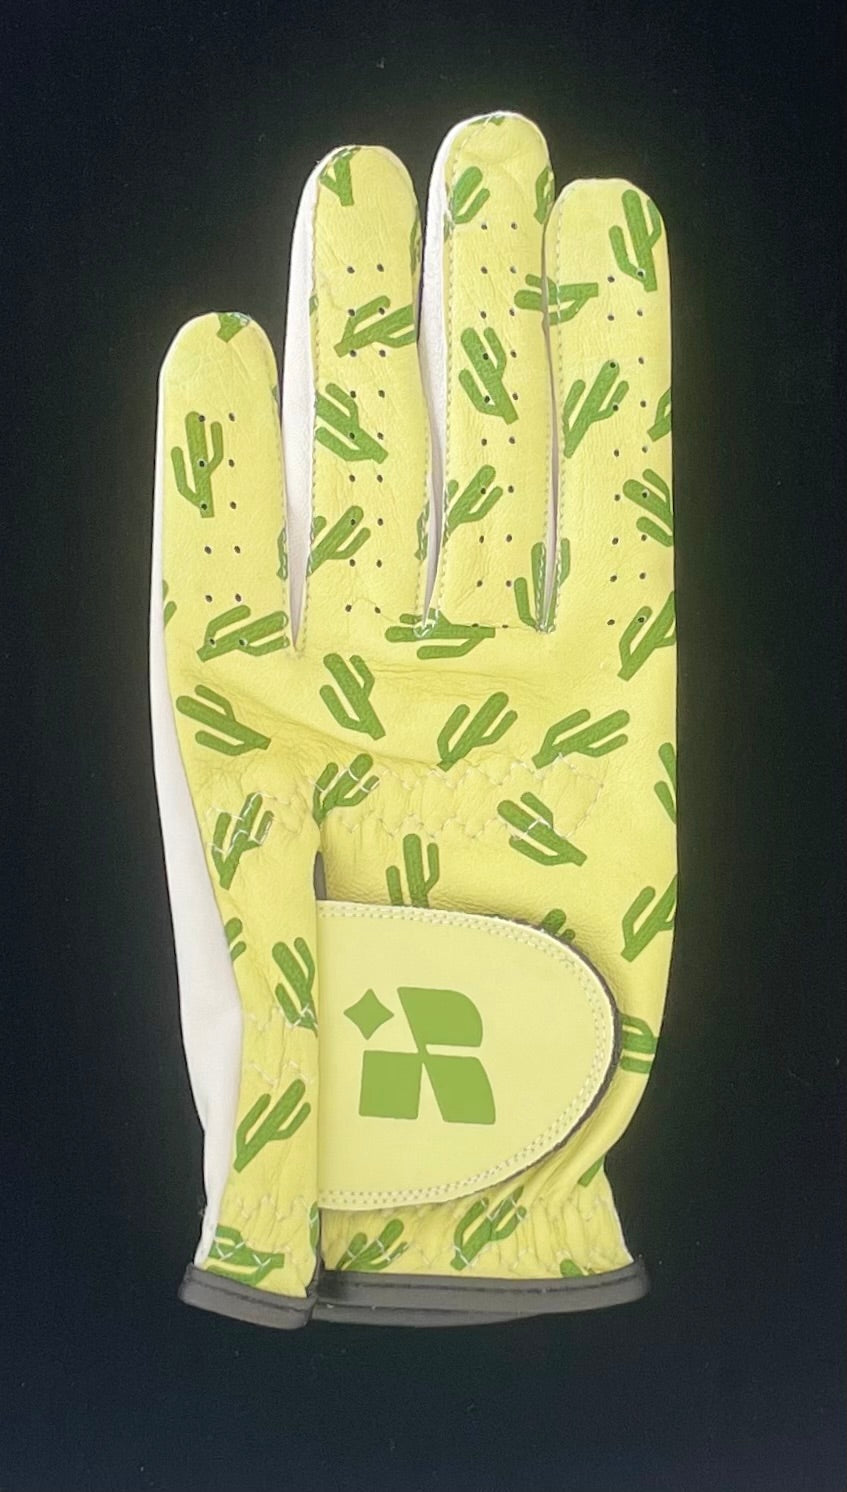 Cactus - Fun Stylish Golf Glove for Women